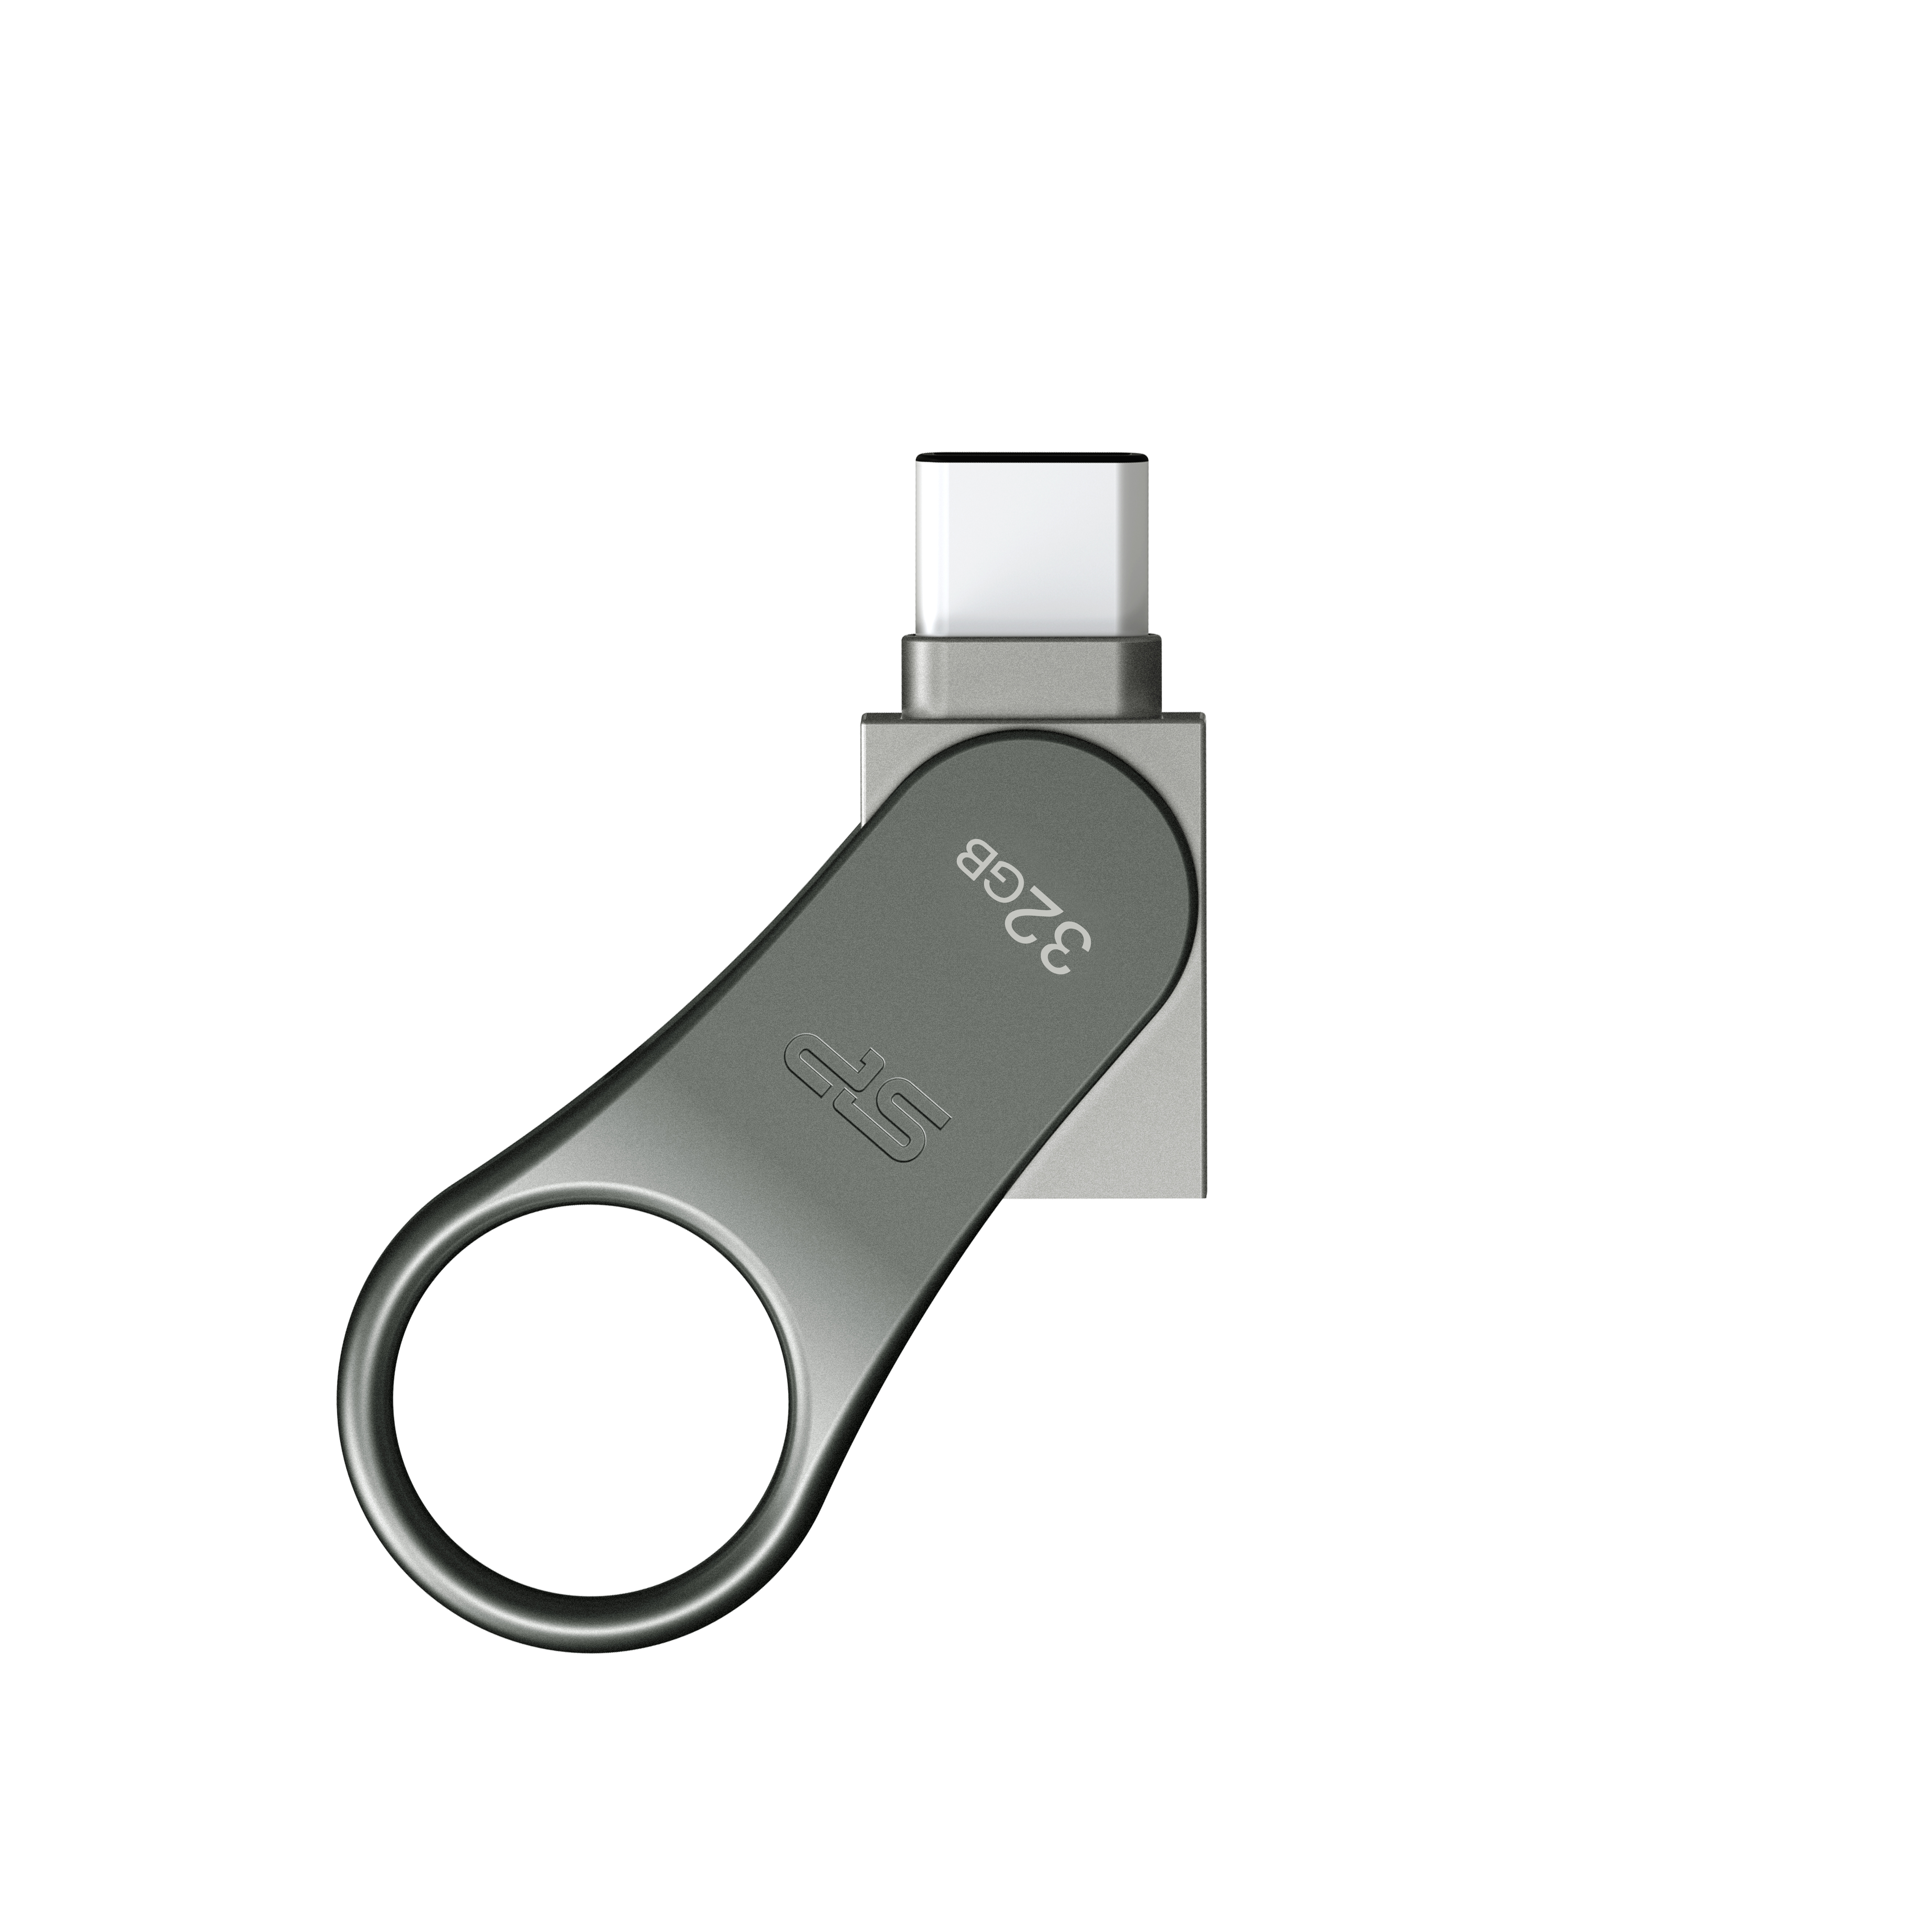 SILICON POWER Jewel J80 - Clé USB - 32 Go - USB 3.0 - titane